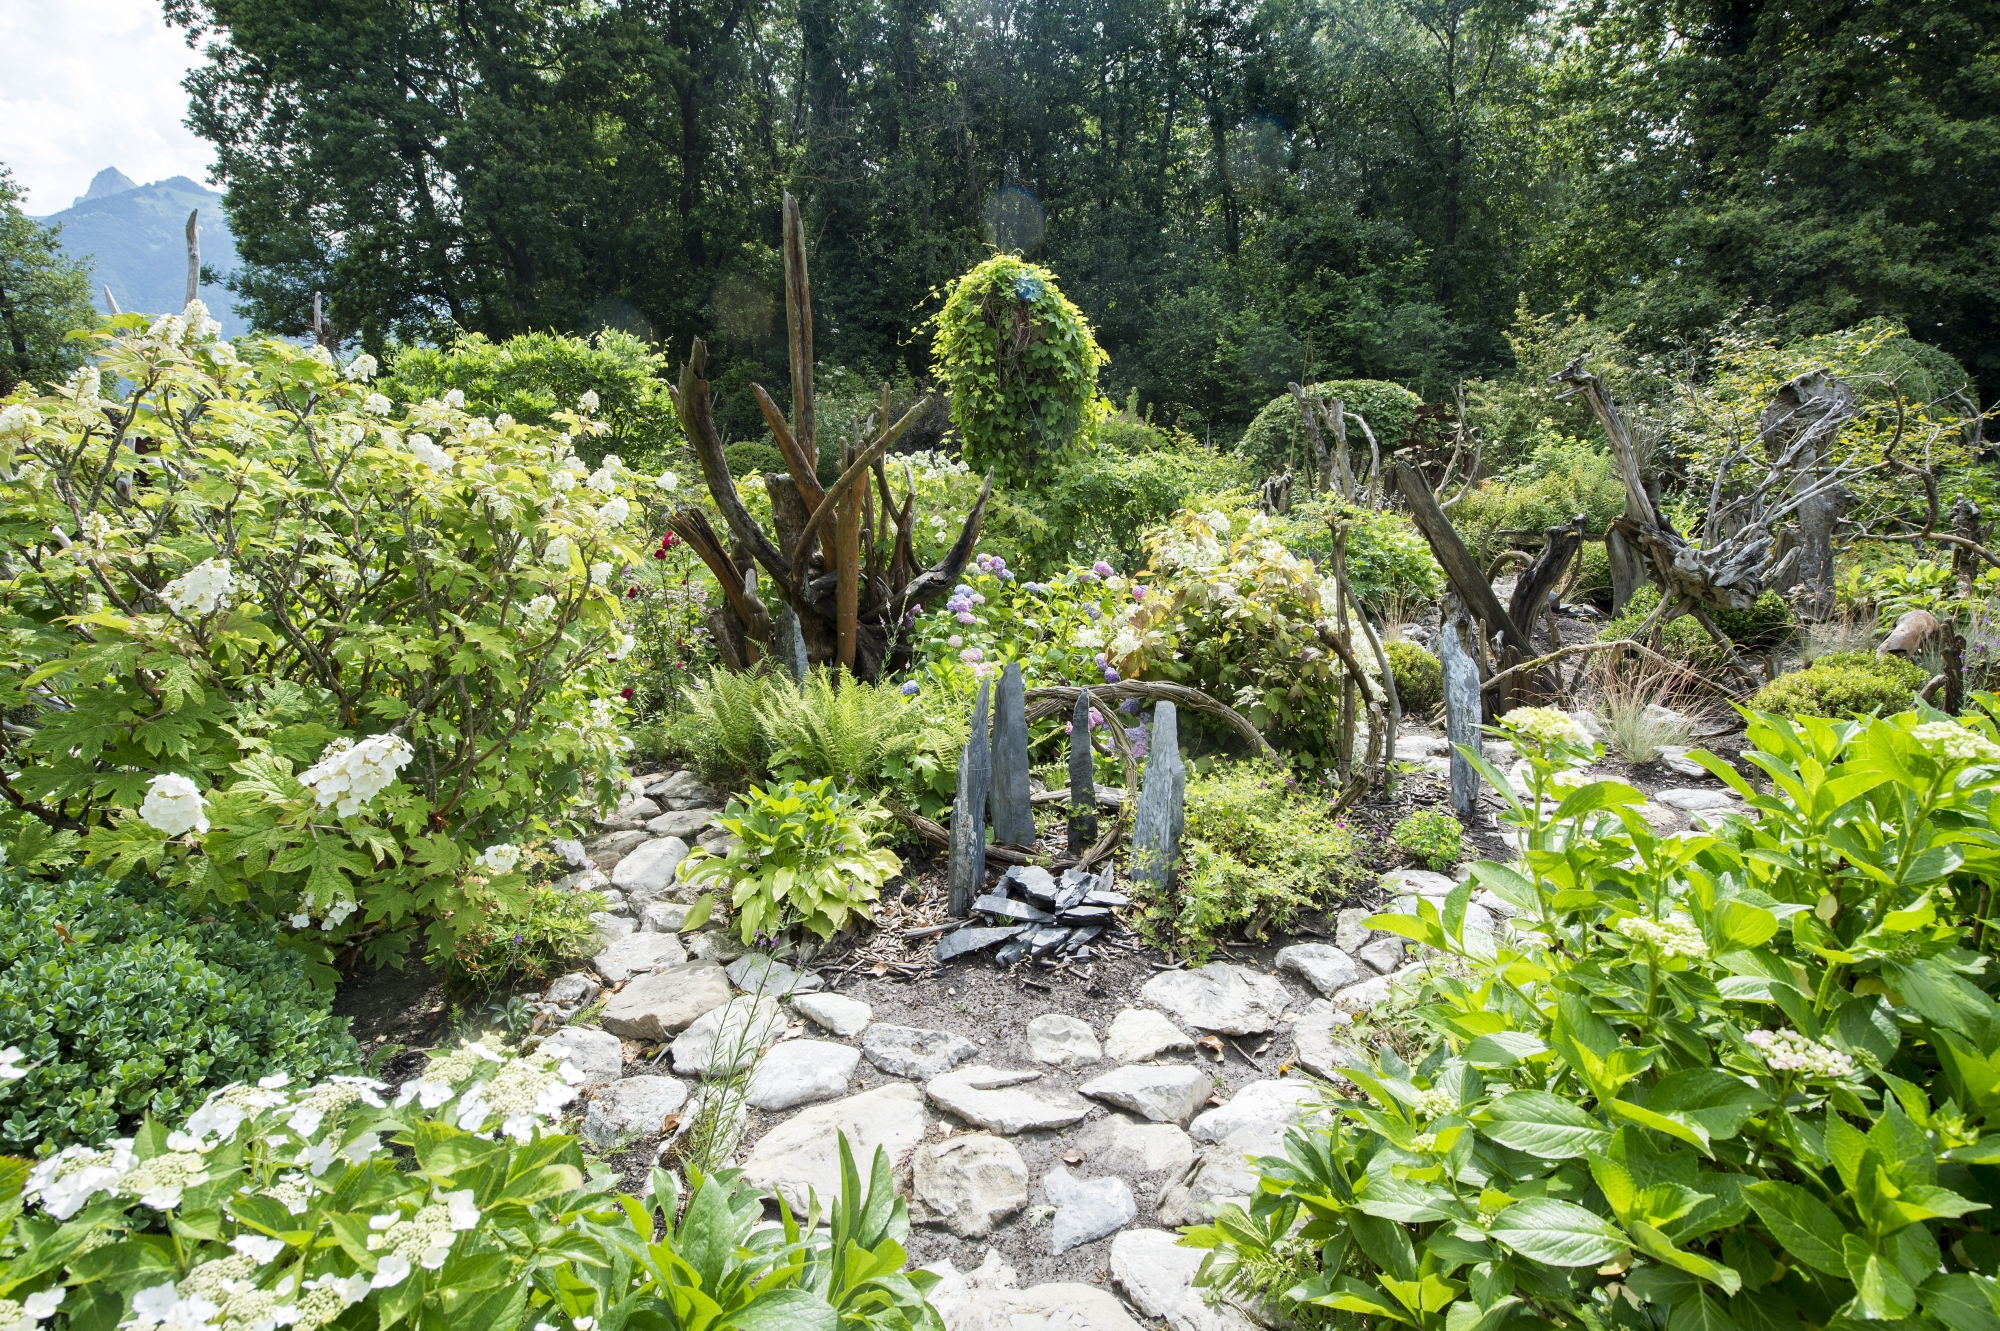  Le décor fantasque et romantique du jardin est instinctivement né de l’imagination d’un photographe épris de nature.
